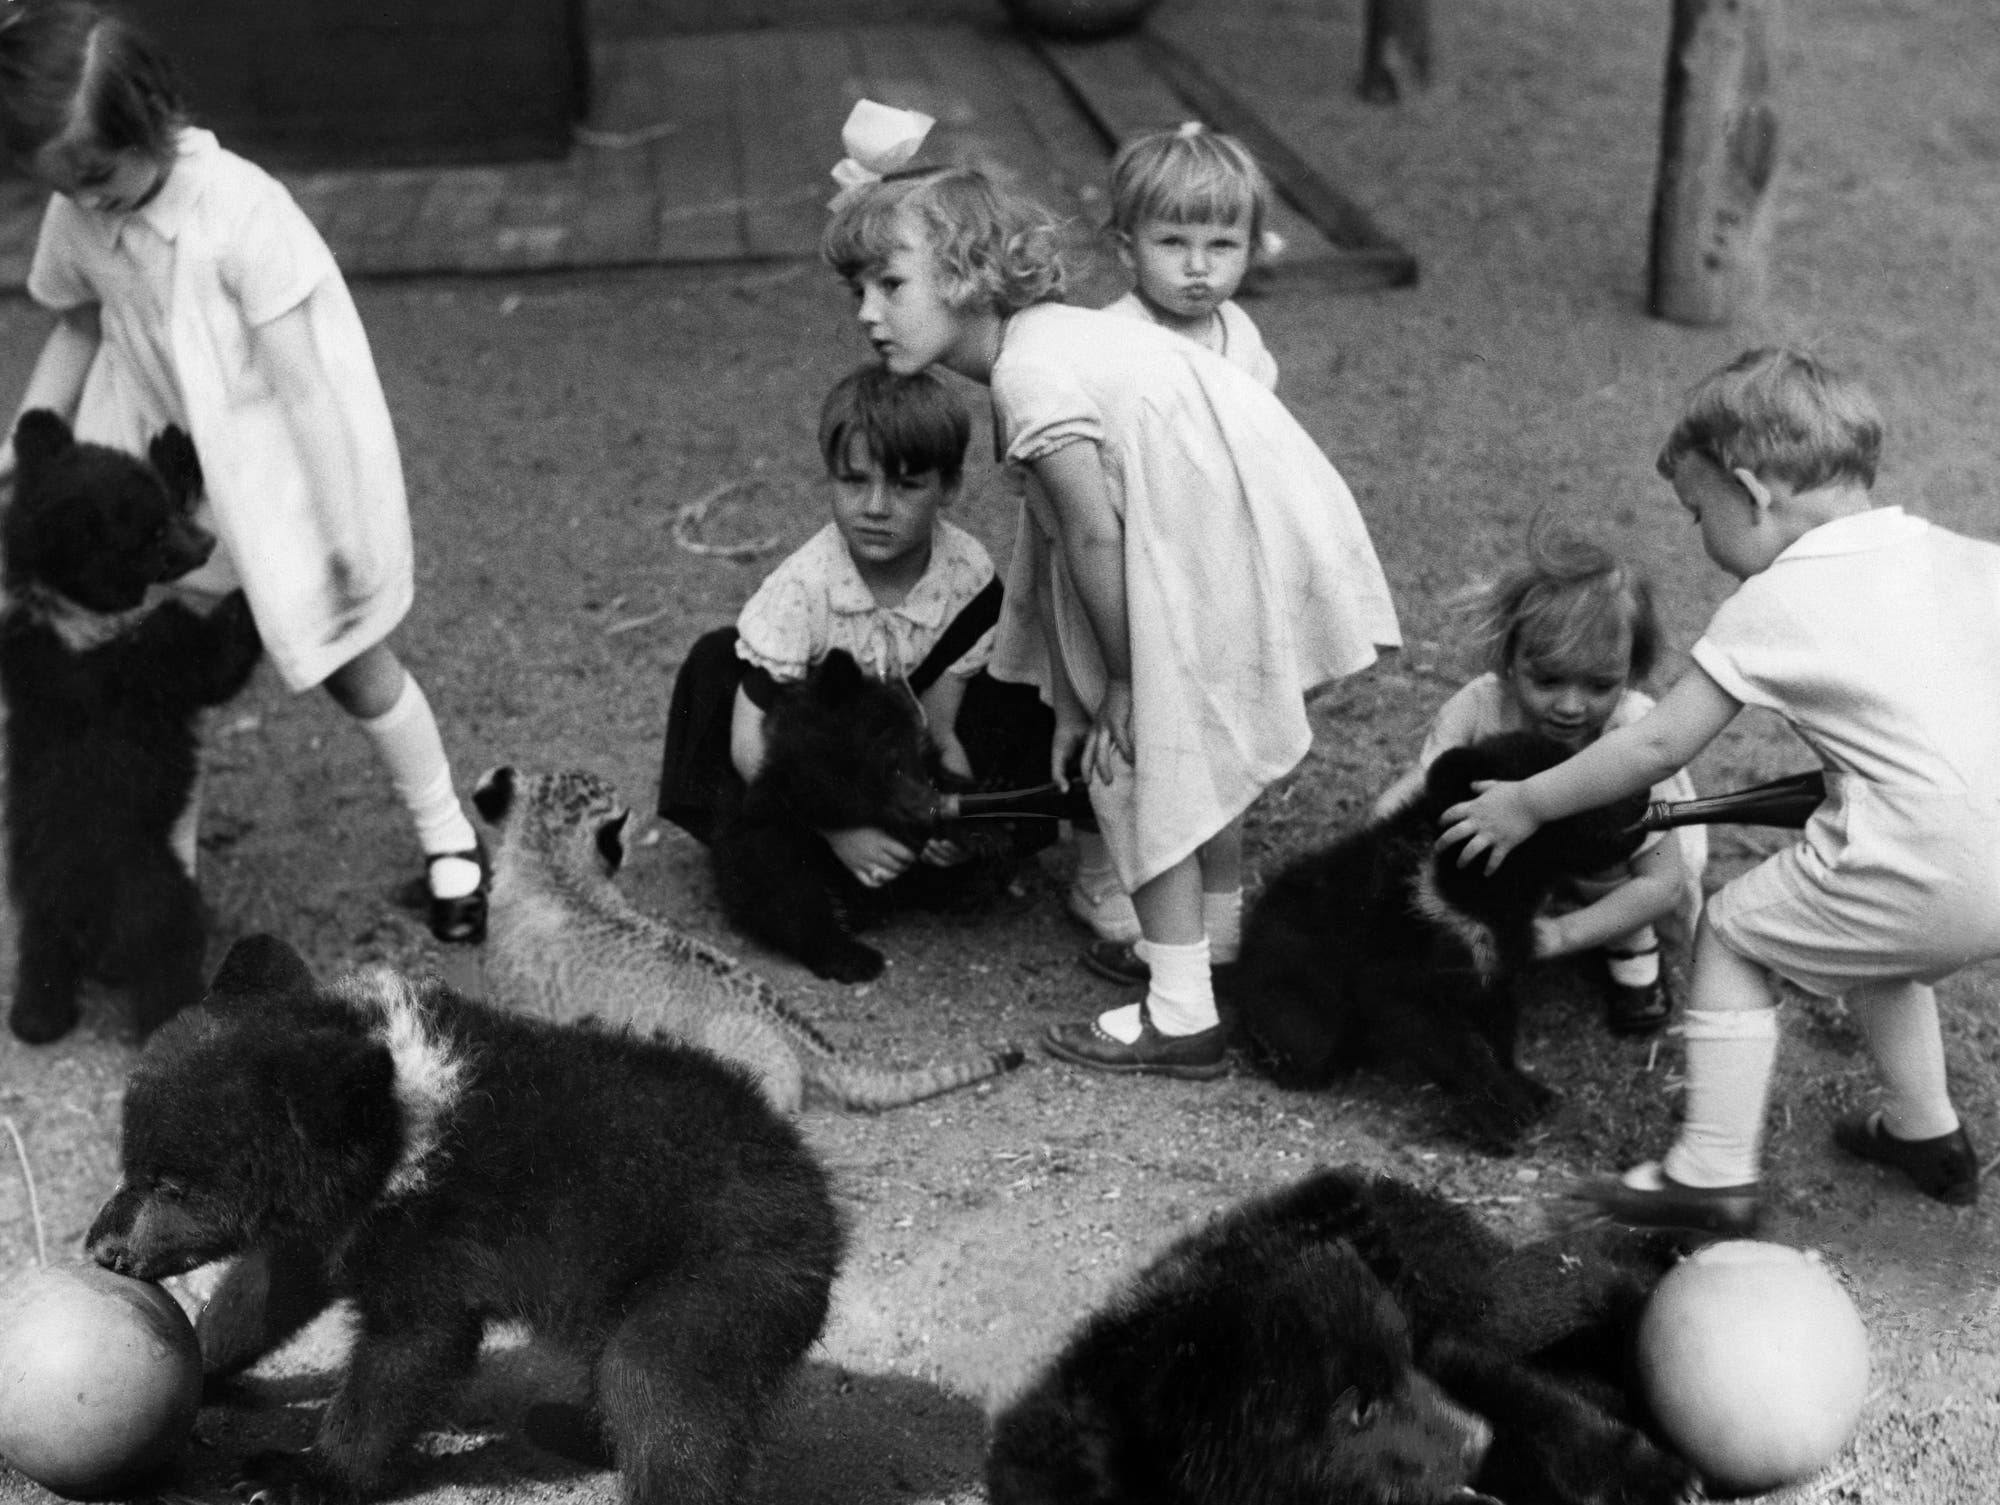 Jungtiere waren bei Tierhändlern ähnlich beliebt wie bei Zoobesuchern – hier eine Szene aus dem Berliner Zoo, wo Kinder mit Jungbären spielen durften: Sie ließen sich leichter zähmen und eingewöhnen. Um sie zu fangen, brachten die Häscher die Elterntiere aber meist um.